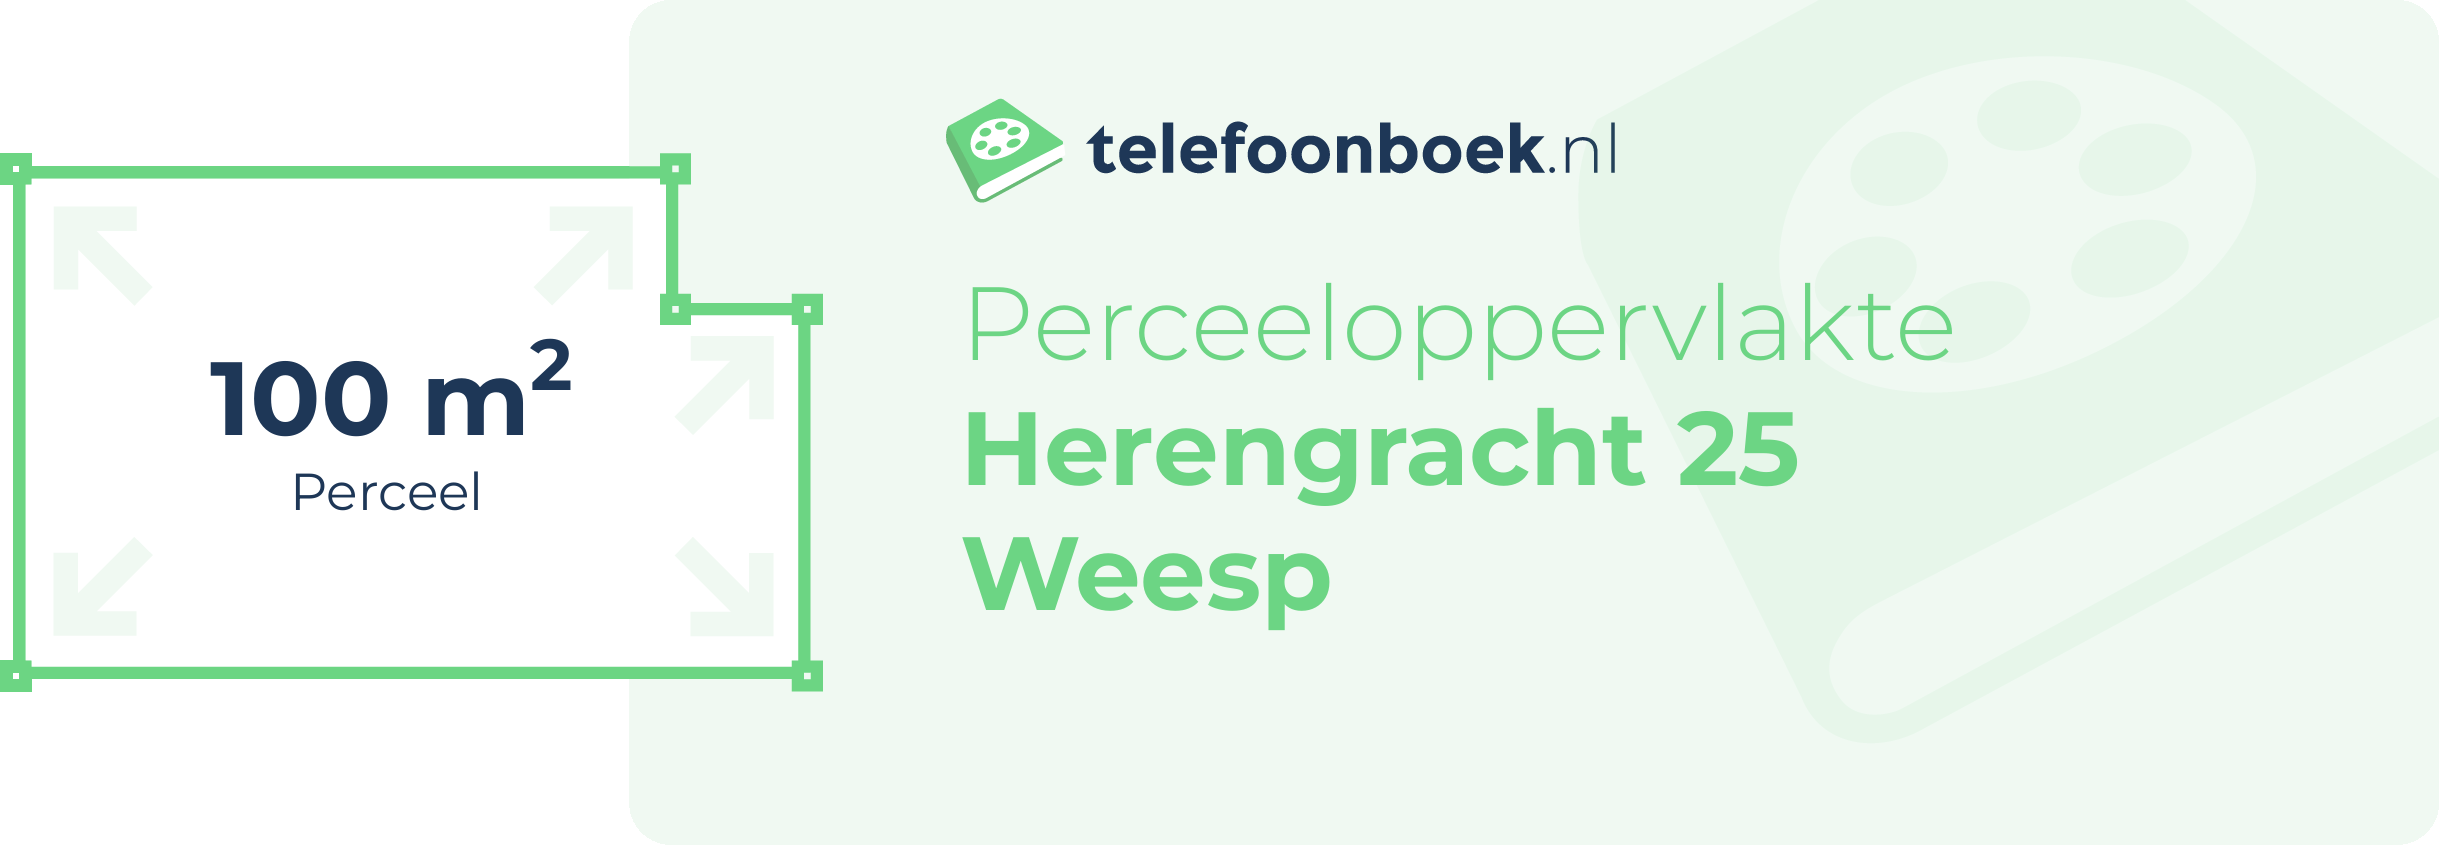 Perceeloppervlakte Herengracht 25 Weesp